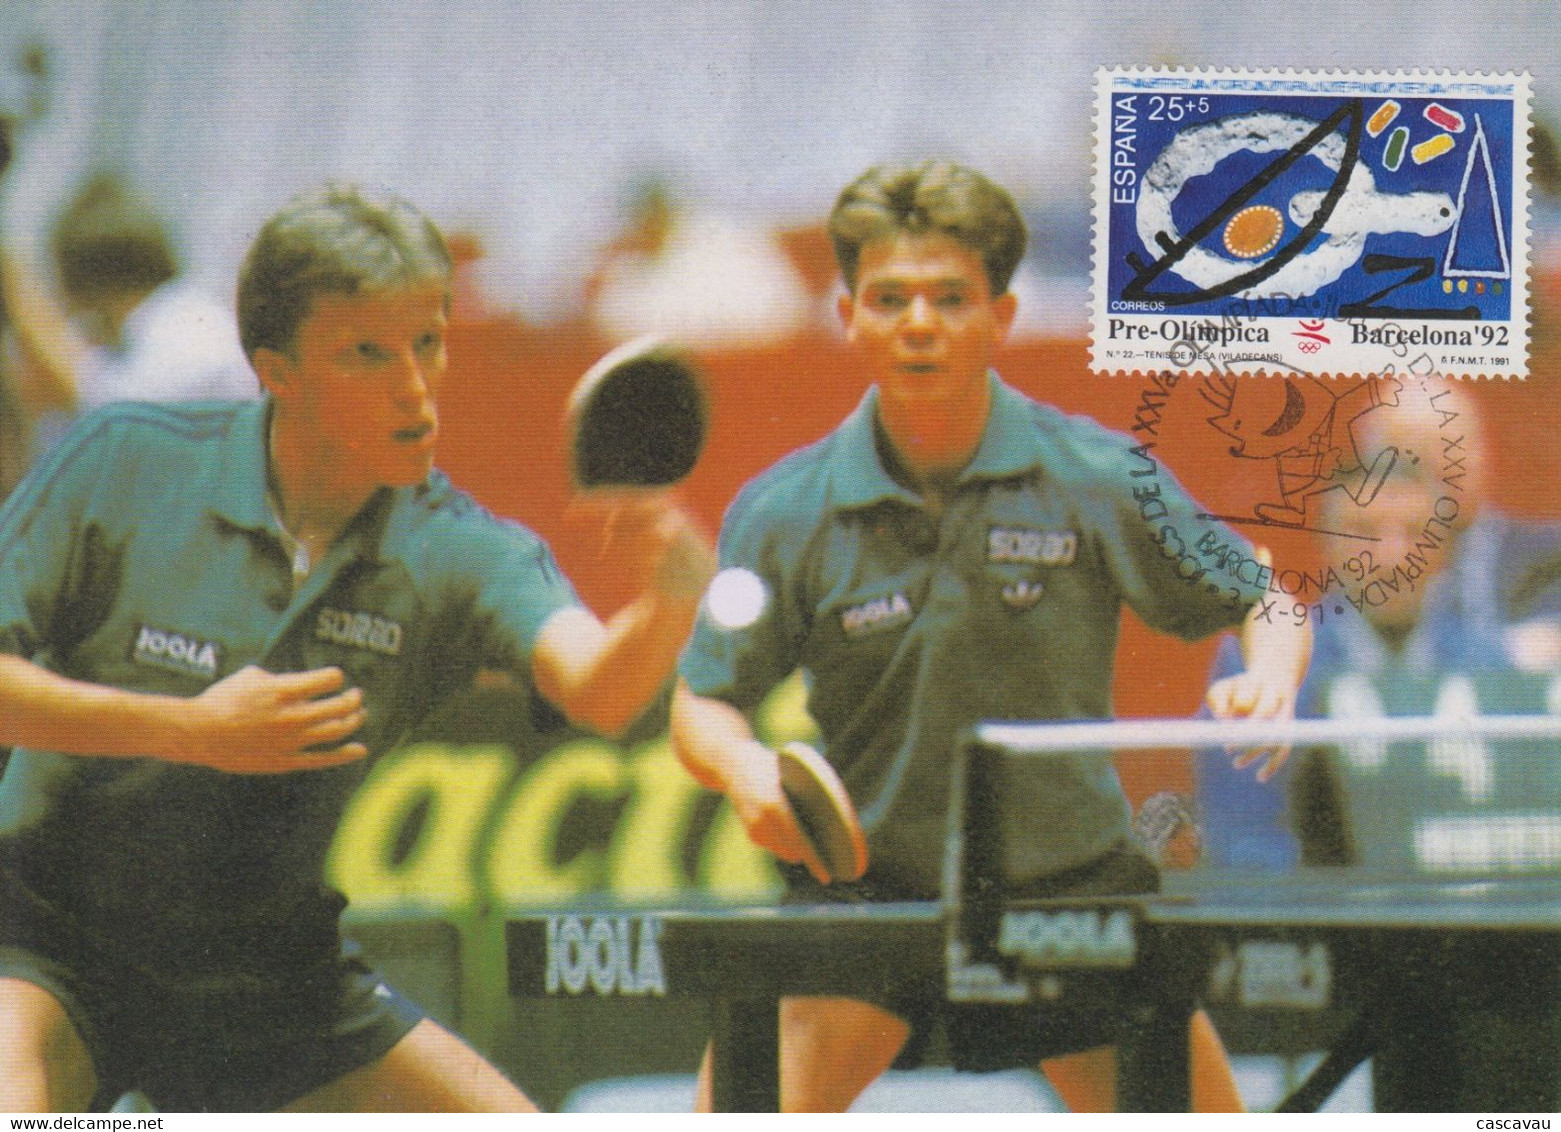 Carte  Maximum  1er  Jour   ESPAGNE   Tennis  De   Table   Série  Préolympique    JEUX  OLYMPIQUES  BARCELONE  1991 - Tennis De Table